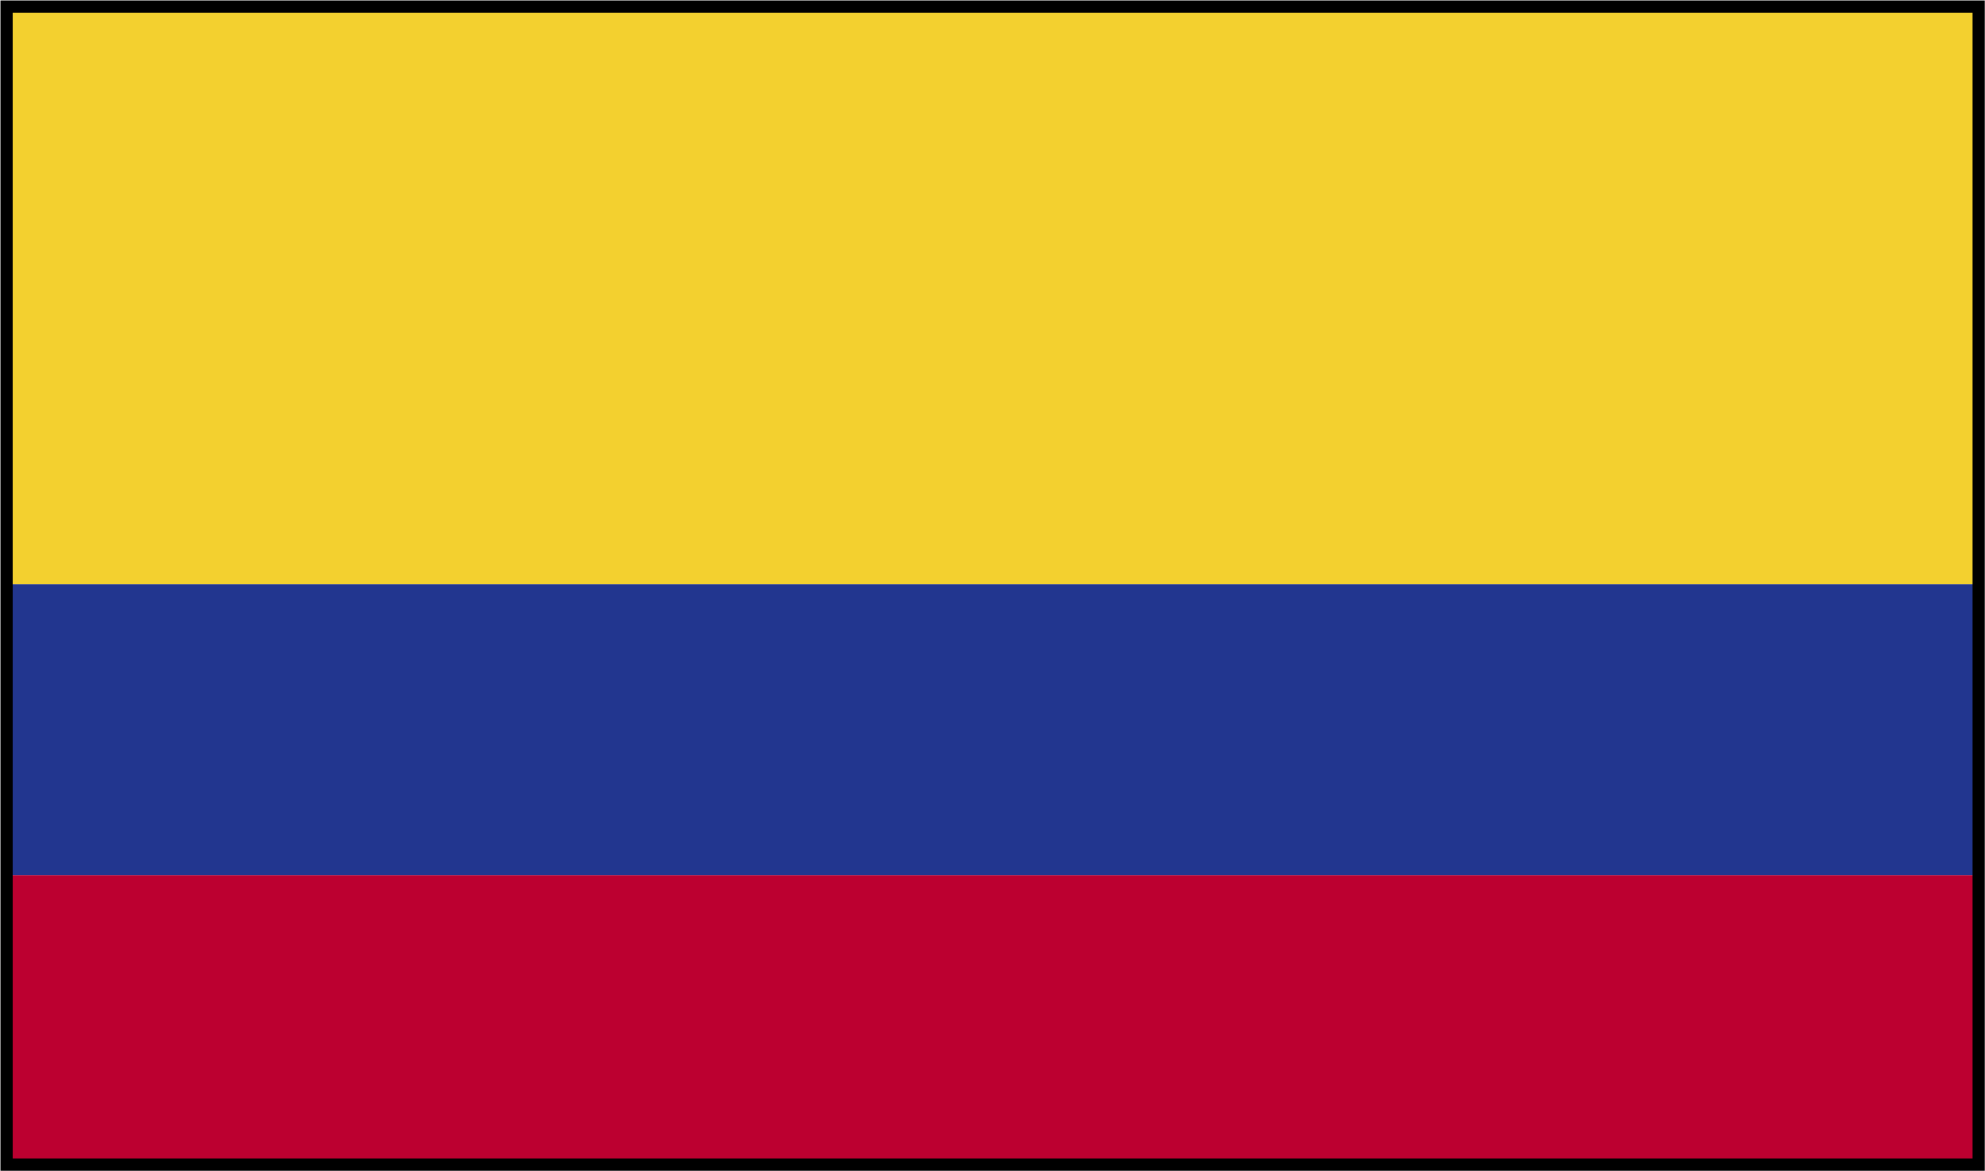 ¡Bienvenidos a Endeavor Colombia!